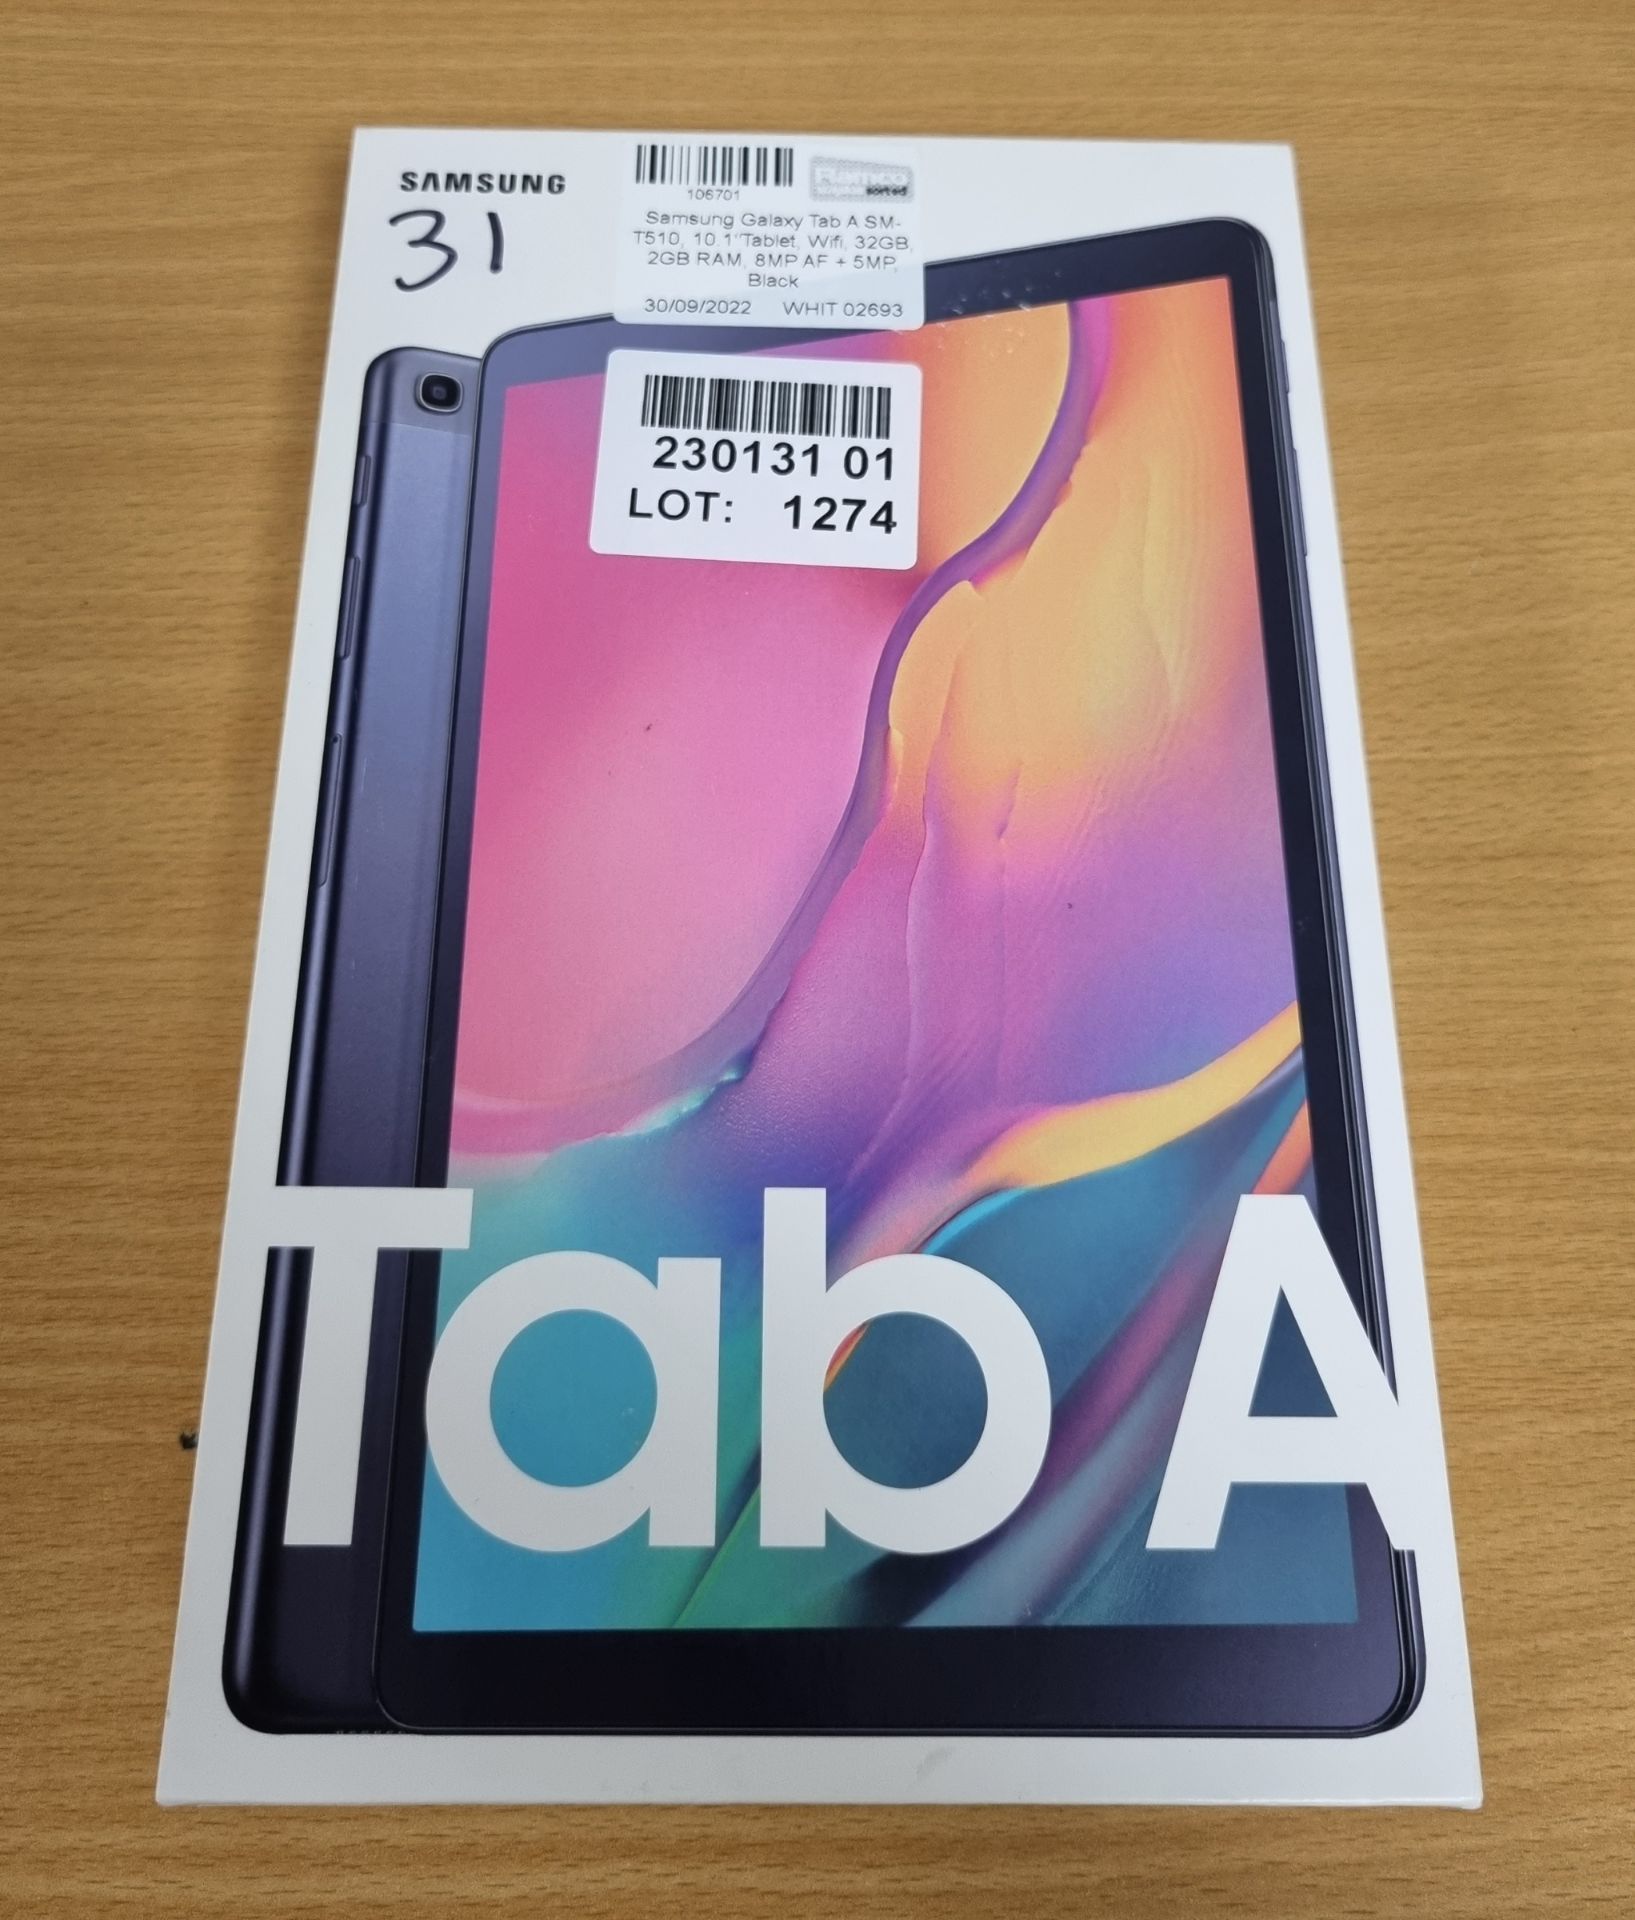 Samsung Galaxy Tab A SM-T510, 10.1 inch Tablet, Wifi, 32GB, 2GB RAM, 8MP AF + 5MP, Black